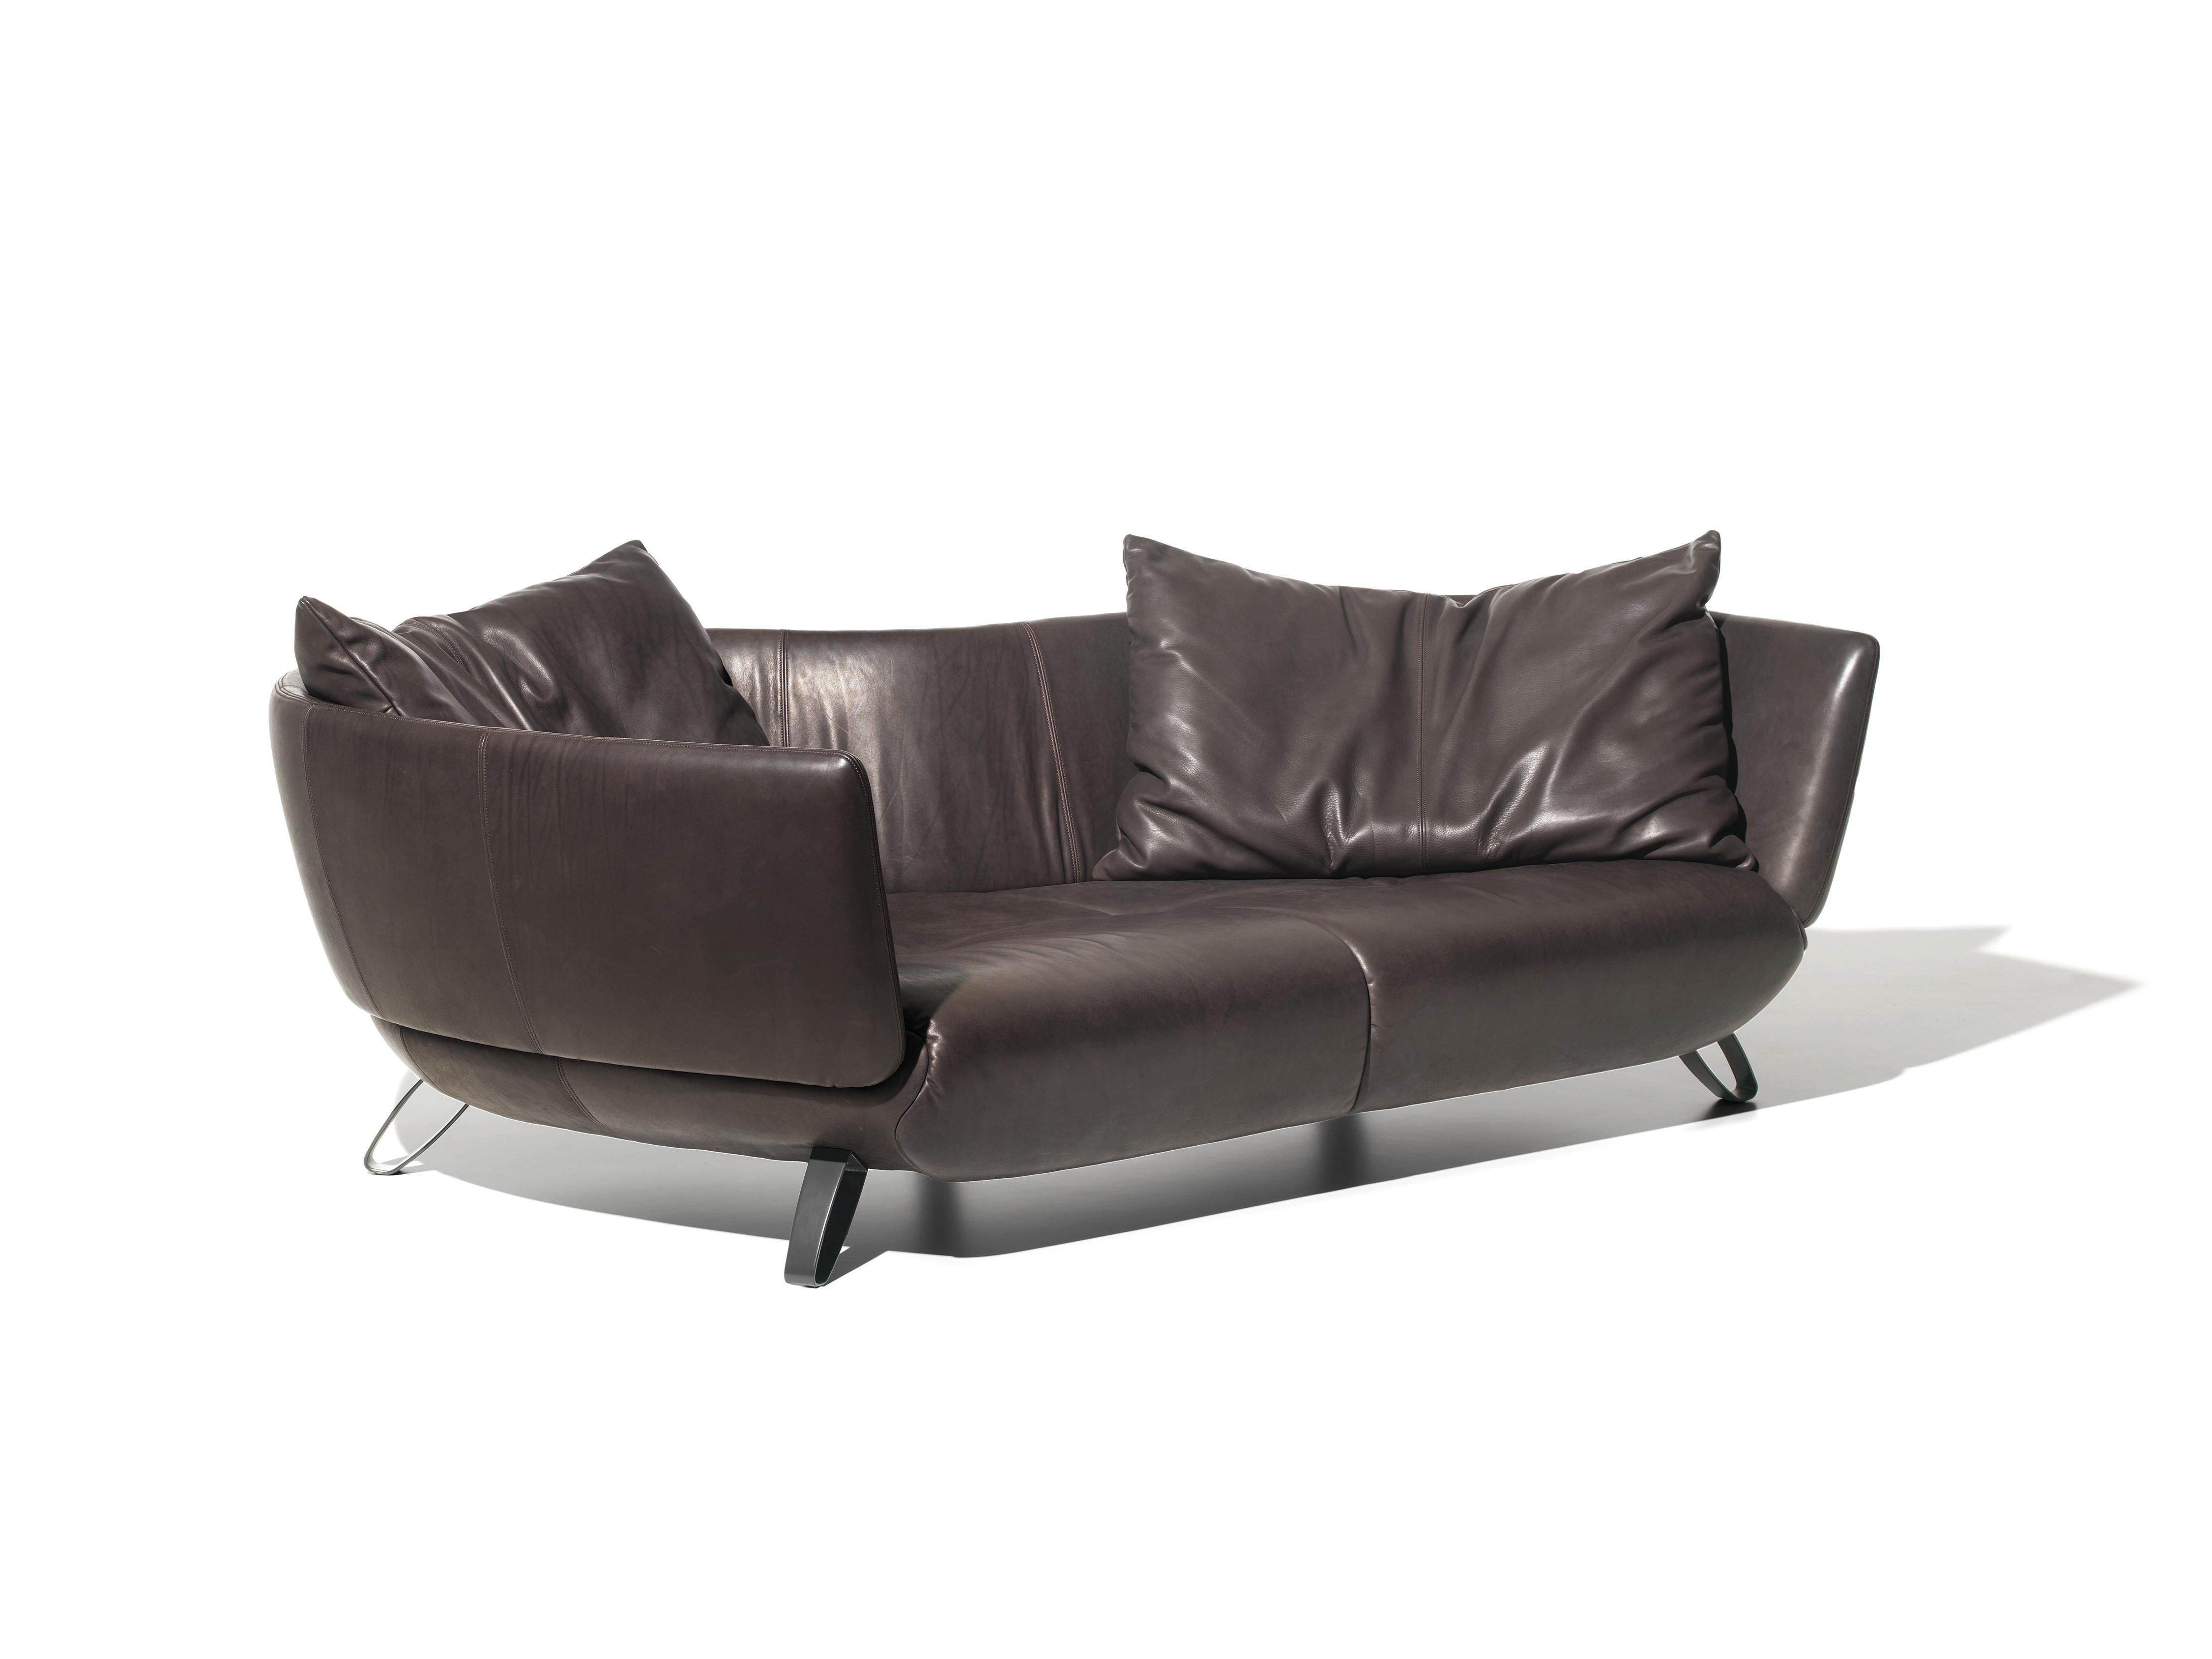 DS-102 sofa von De Sede
Die Kissen sind optional, bitte kontaktieren Sie uns.
Abmessungen: T 90 x B 235 x H 77 cm
MATERIALIEN: Aluminium, Leder

Die Preise können sich je nach den gewählten Materialien und der Größe ändern. 

Eine Serie mit einer